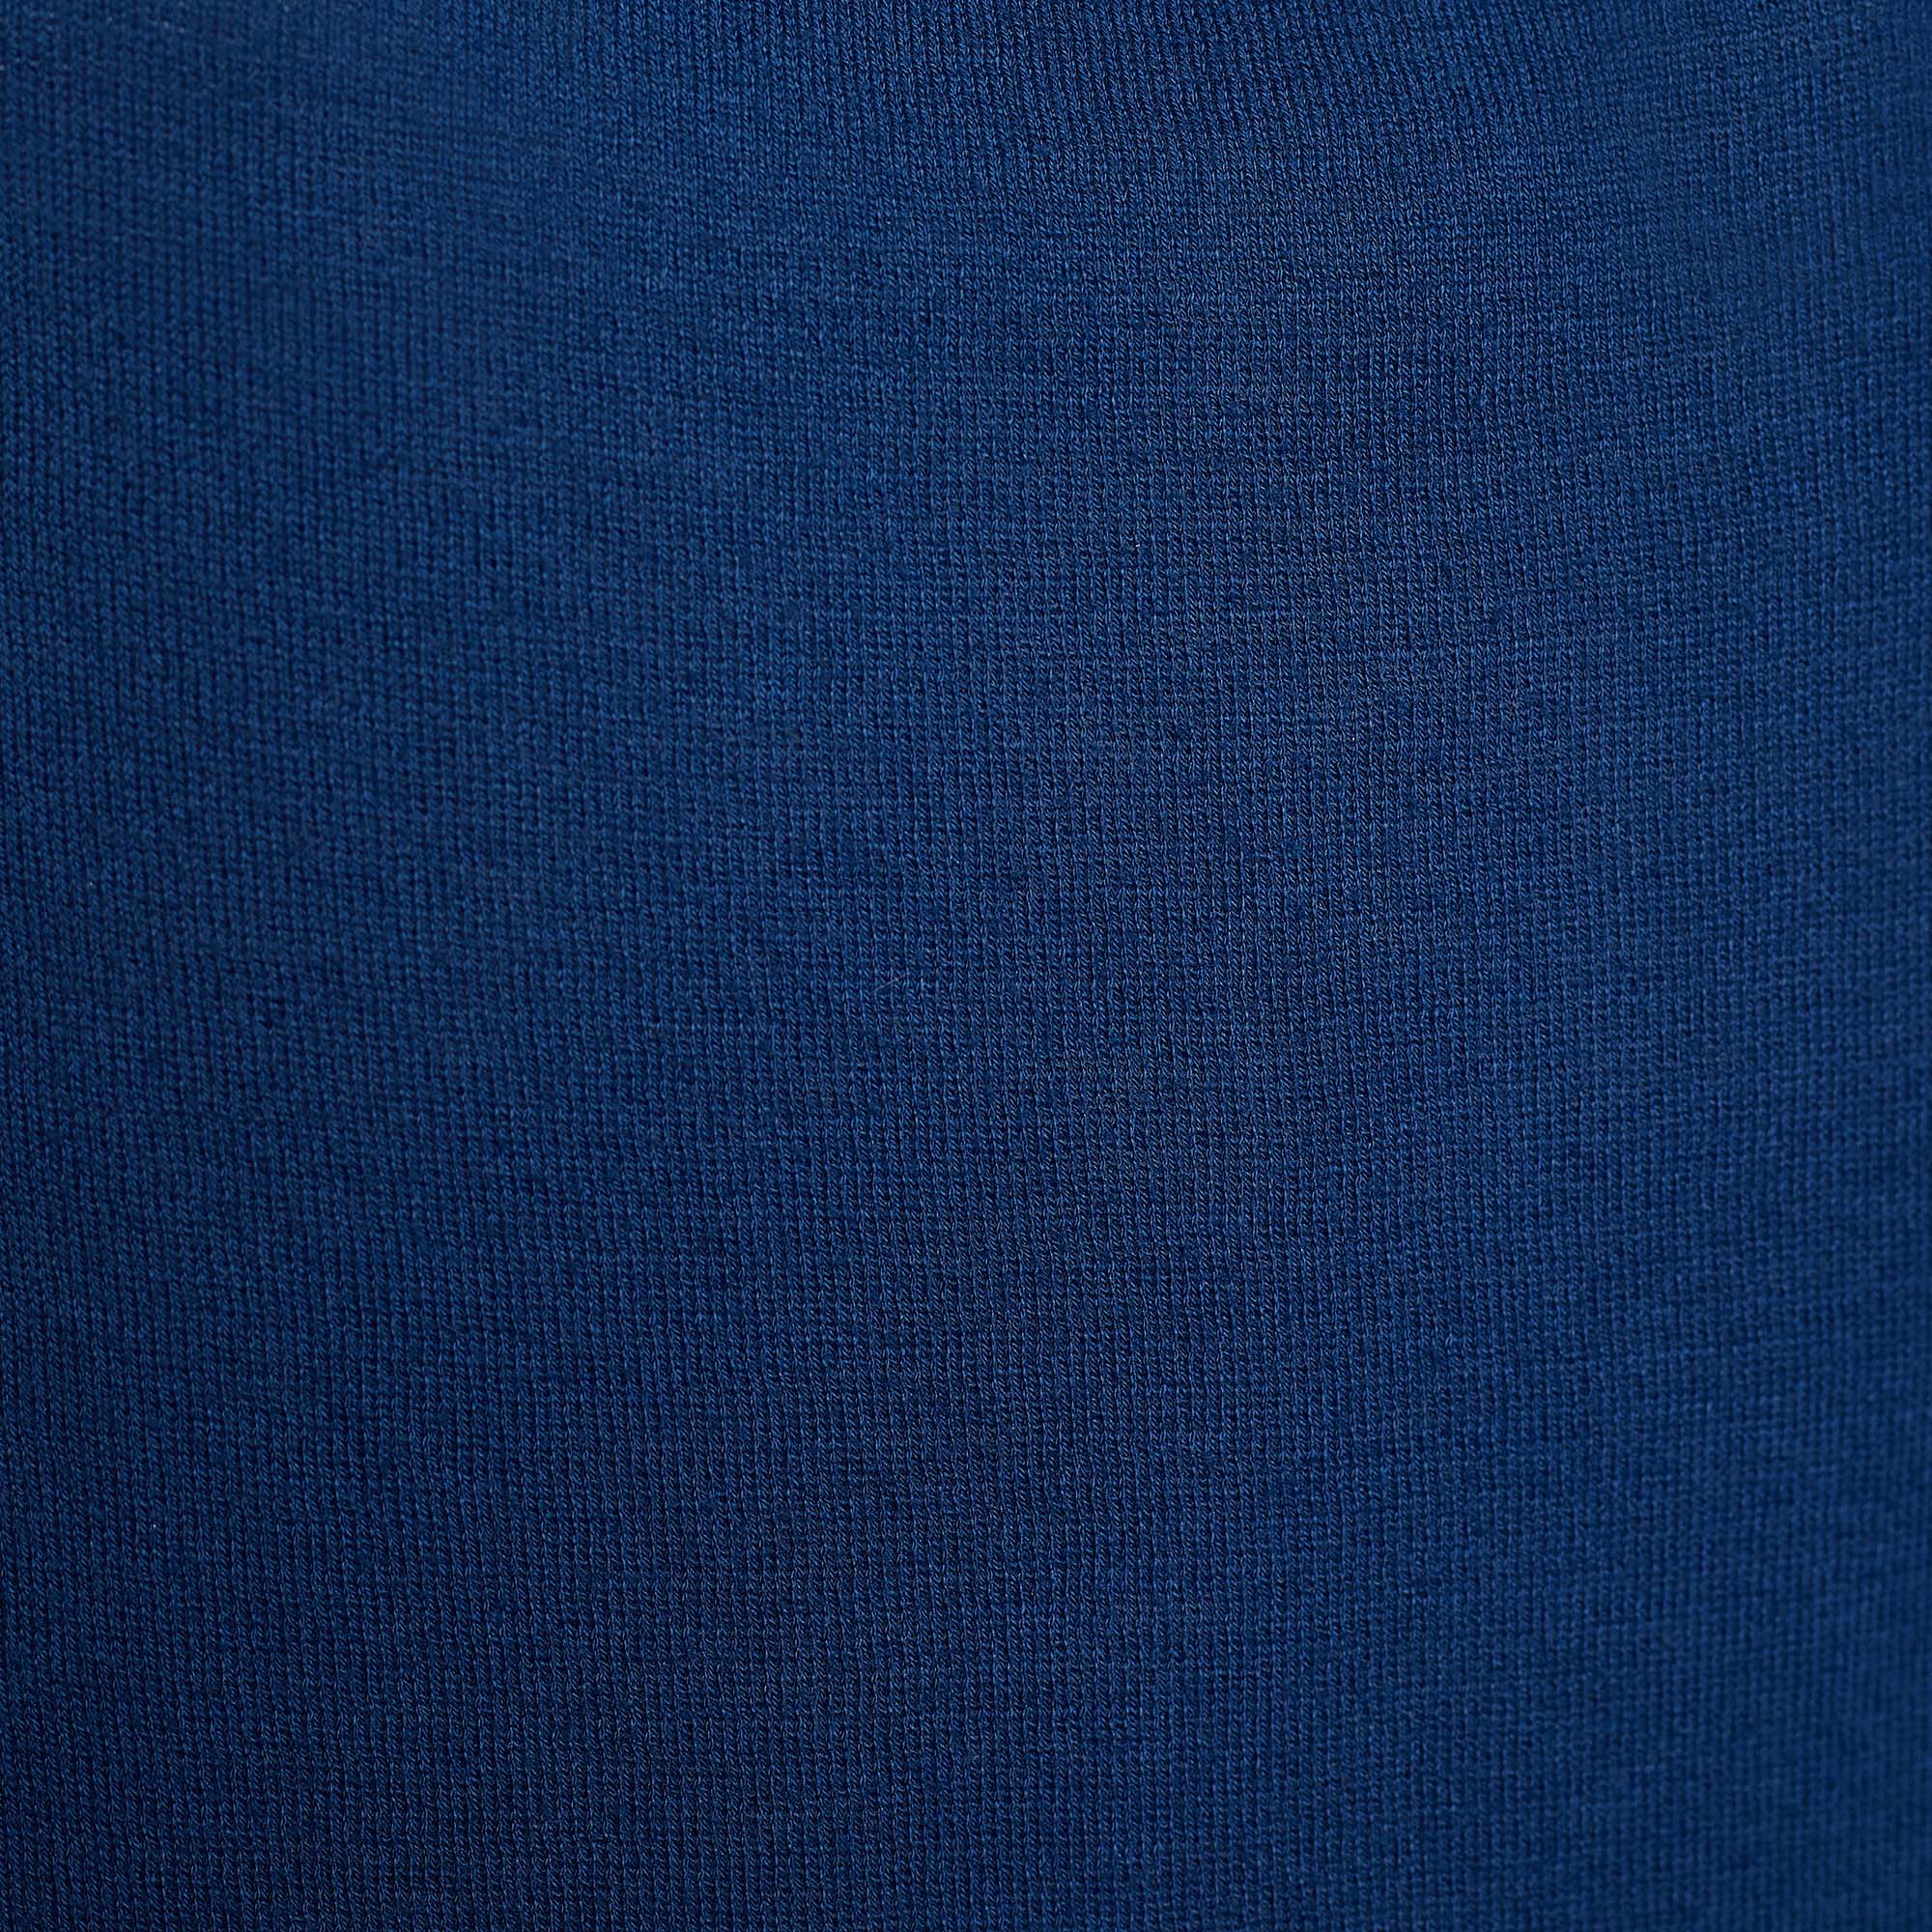 Marni Blue Cotton Knit Button Front Top L